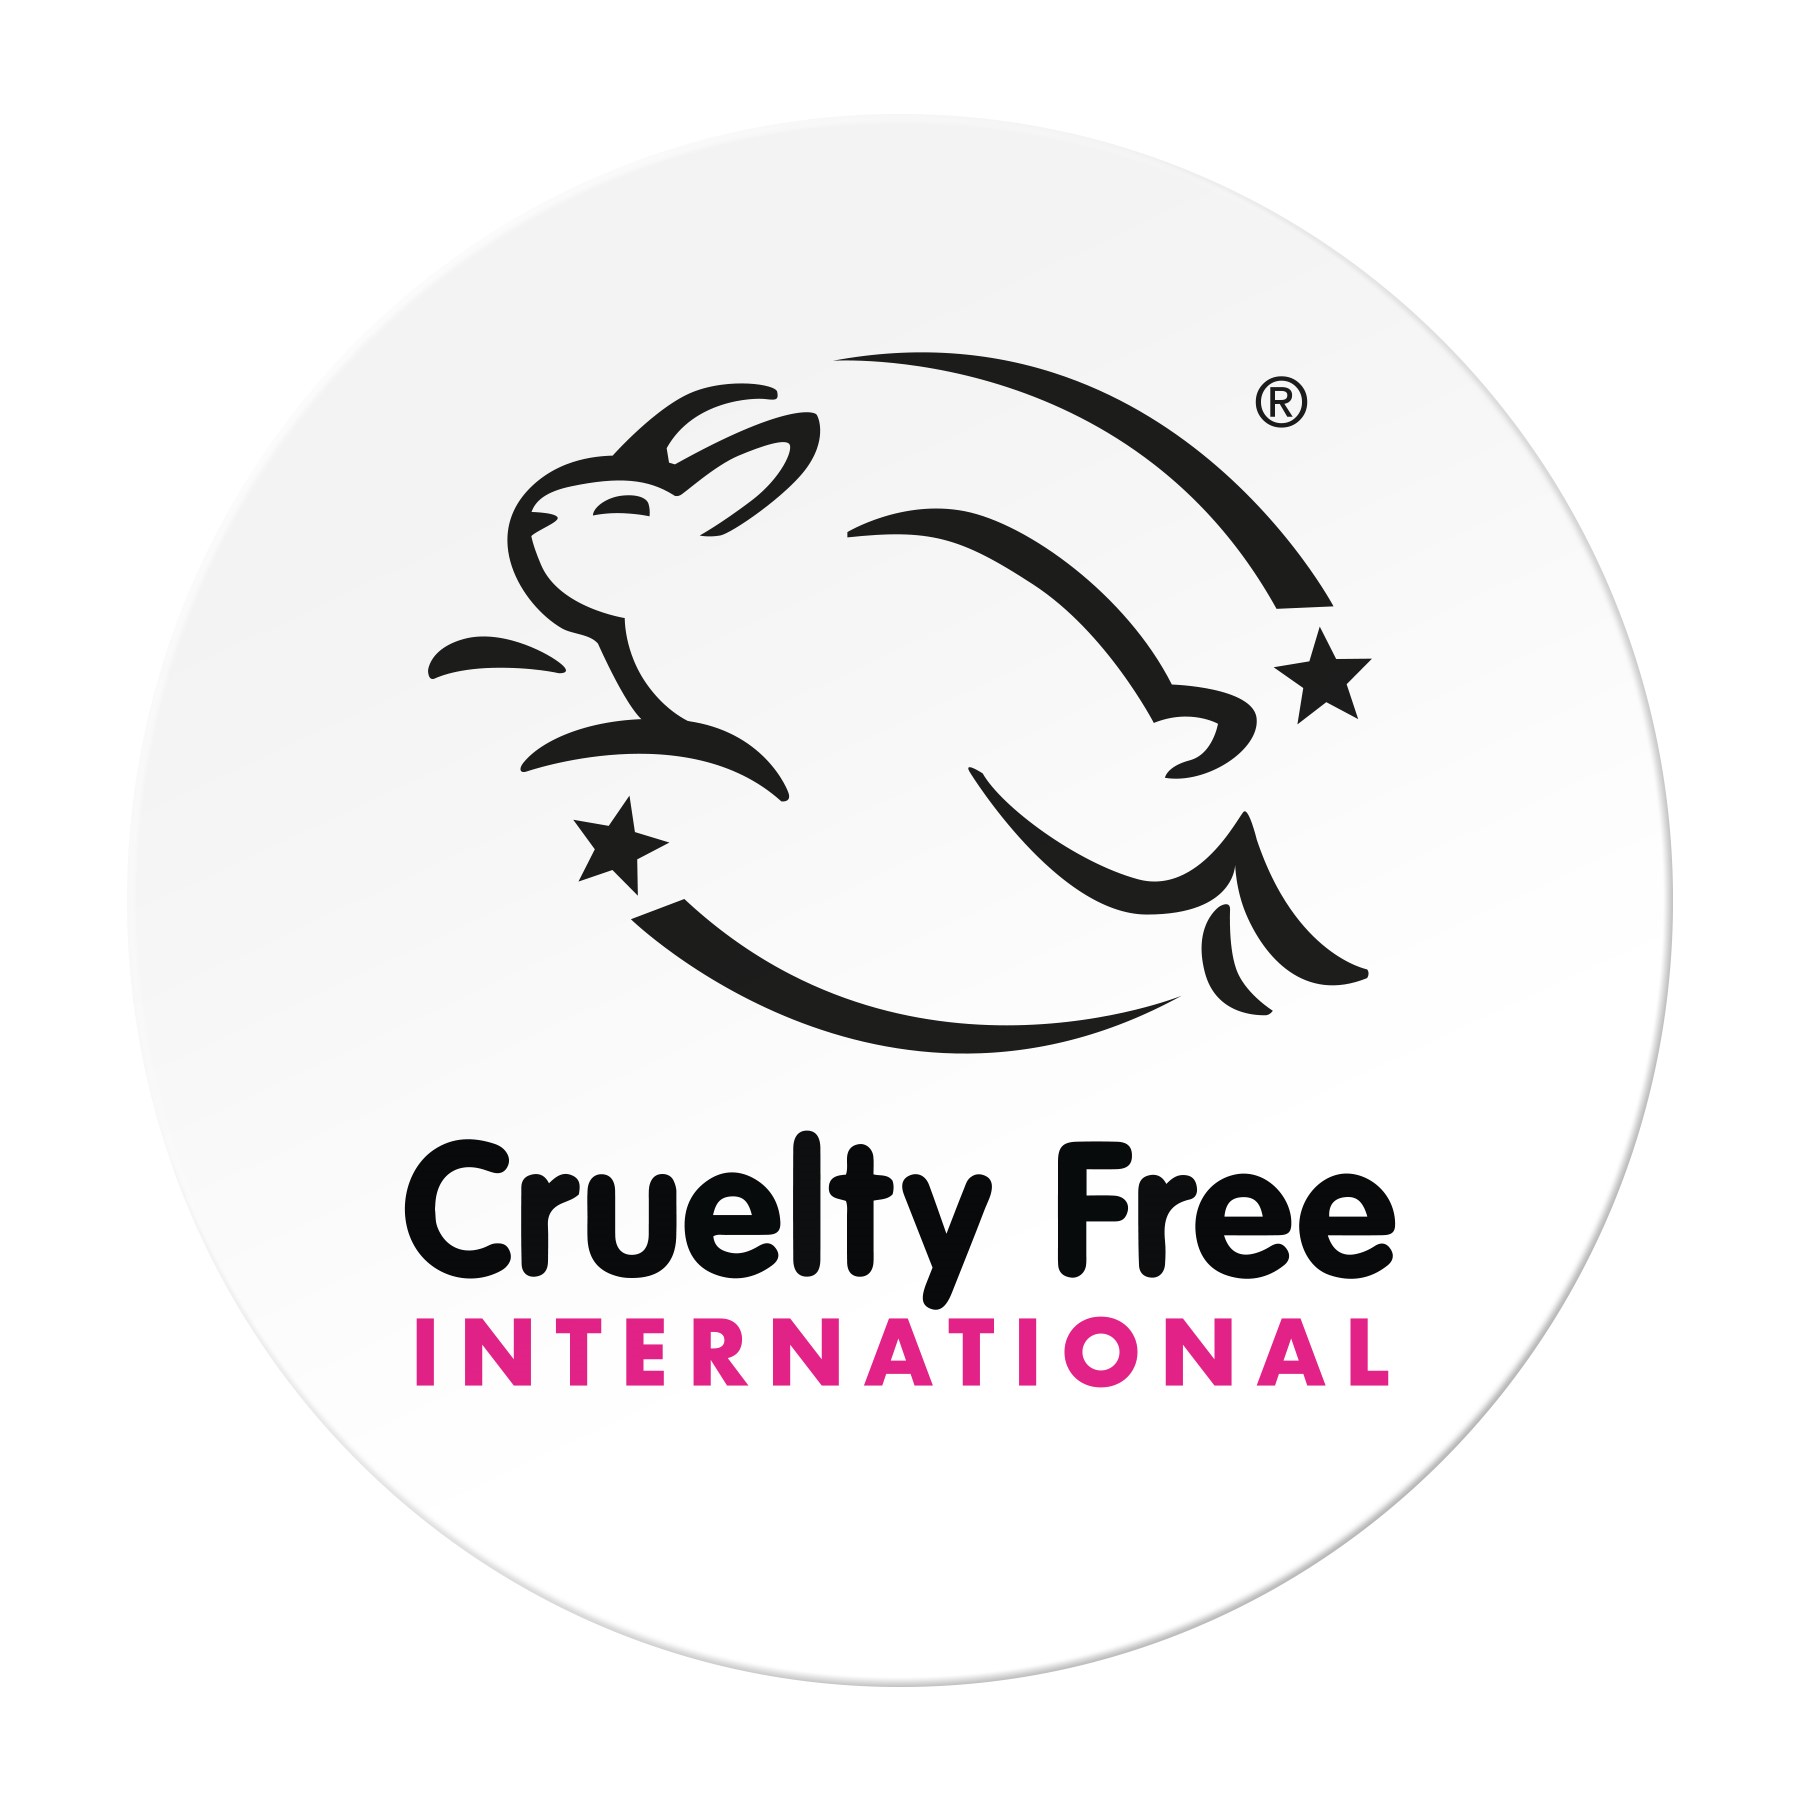 כל מוצרי גרנייה בעולם (ובישראל) הוכרו רשמית  ע"י הארגון העולמי המוביל Cruelty Free International :  המעניק אישור על אי עריכת ניסויים בבעלי חיים  (מצב הקיים מאז 1989)